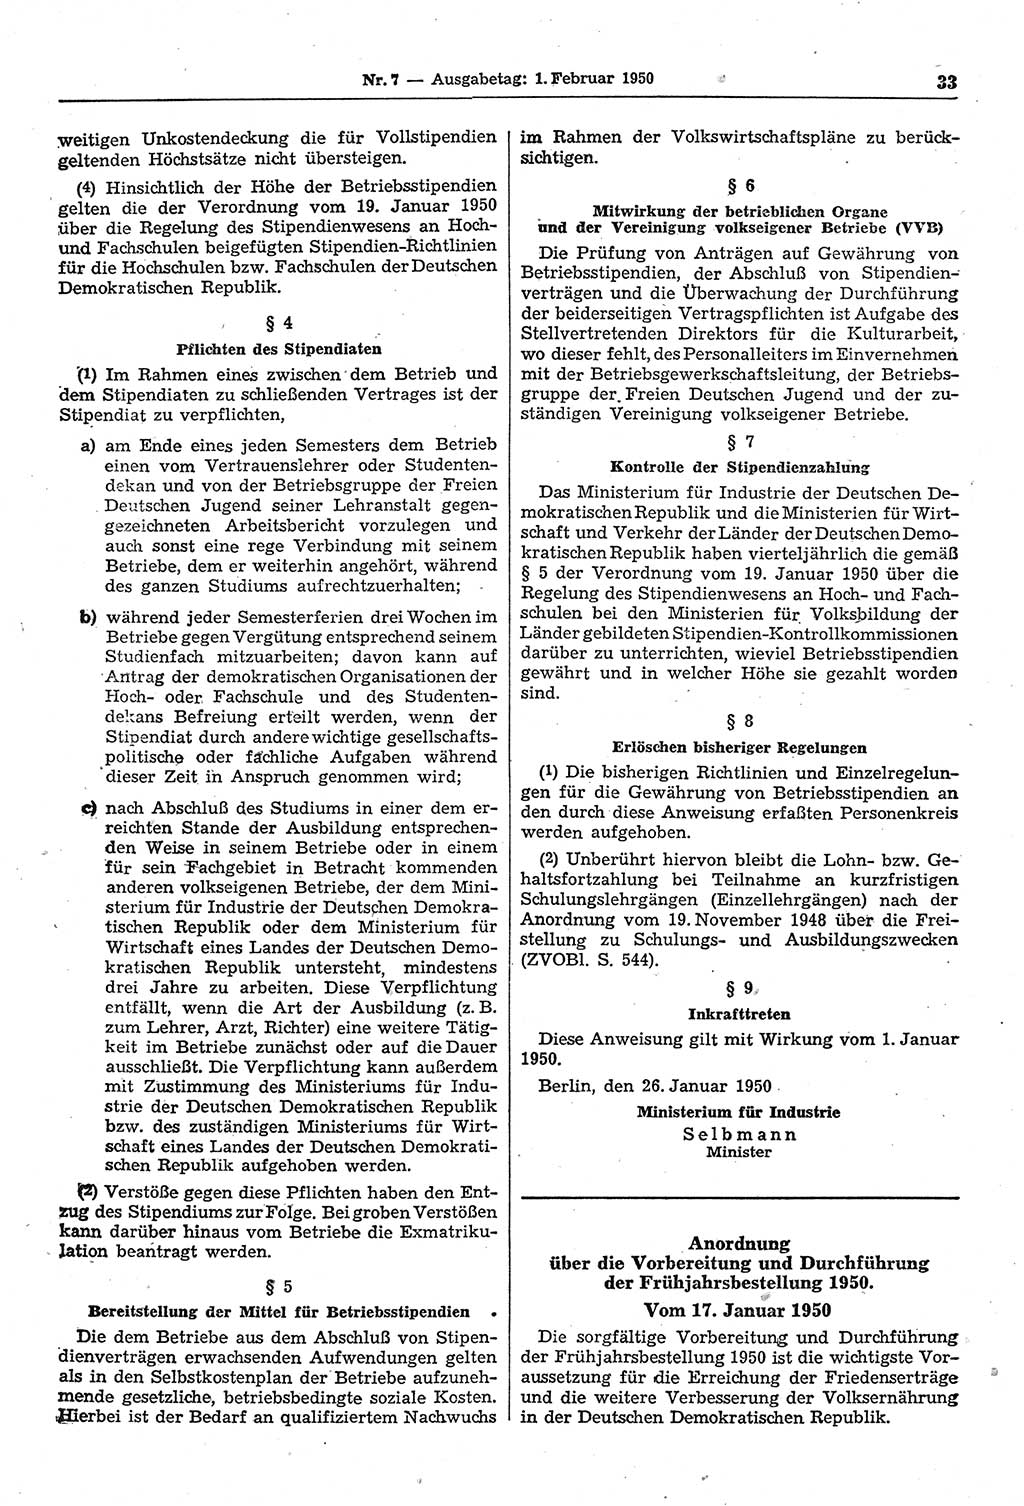 Gesetzblatt (GBl.) der Deutschen Demokratischen Republik (DDR) 1950, Seite 33 (GBl. DDR 1950, S. 33)